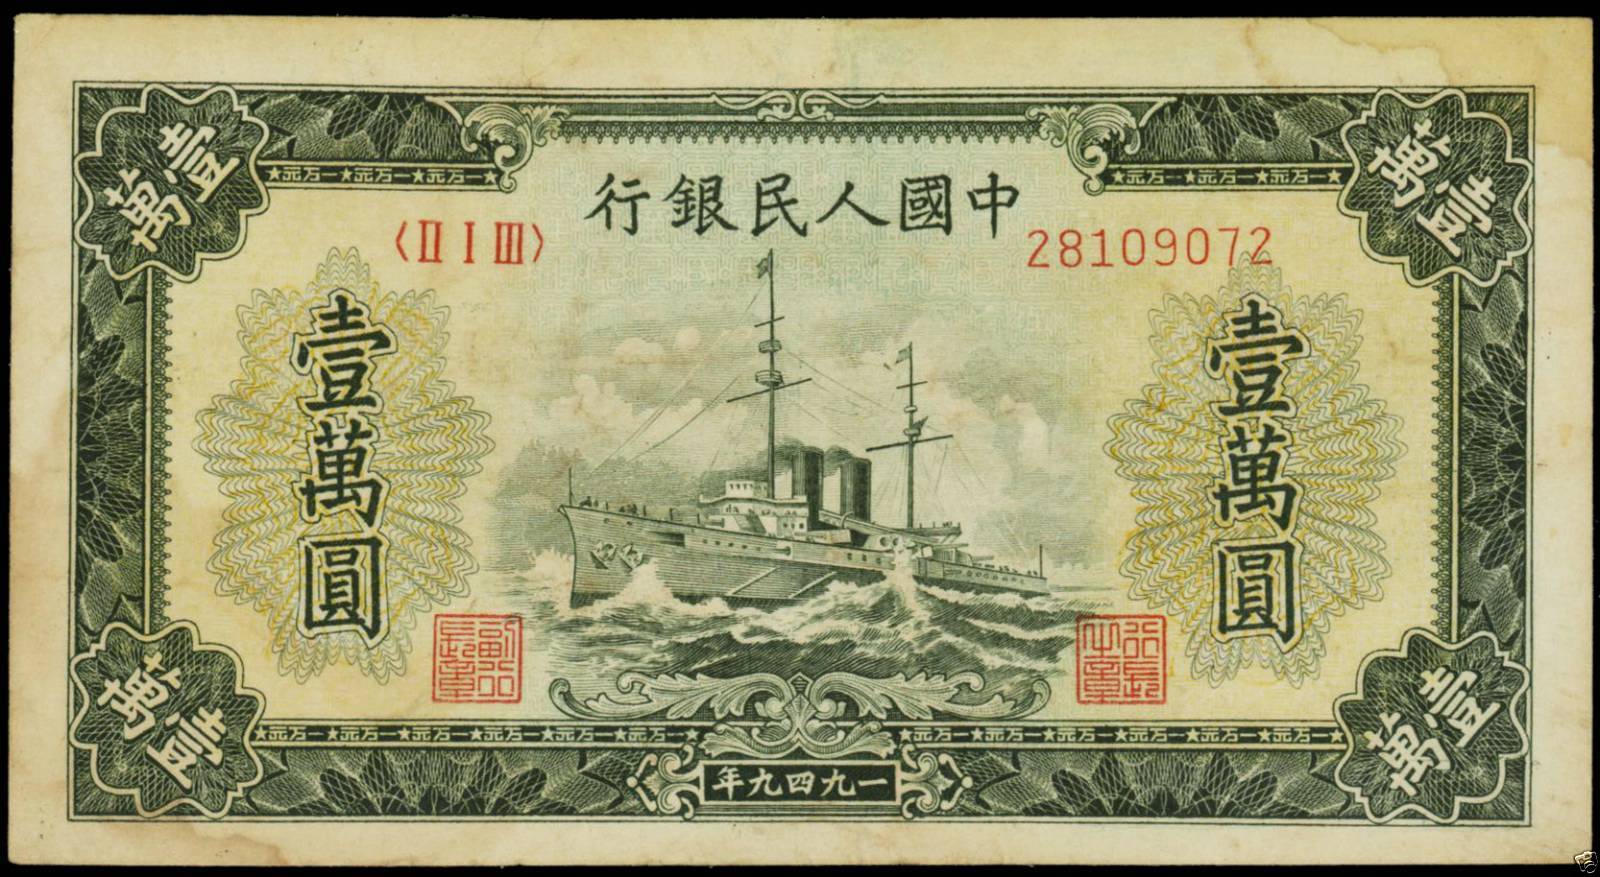 CC008 China Peoples Bank of China 10,000 Yuan 1949 P-854a, SM#C2